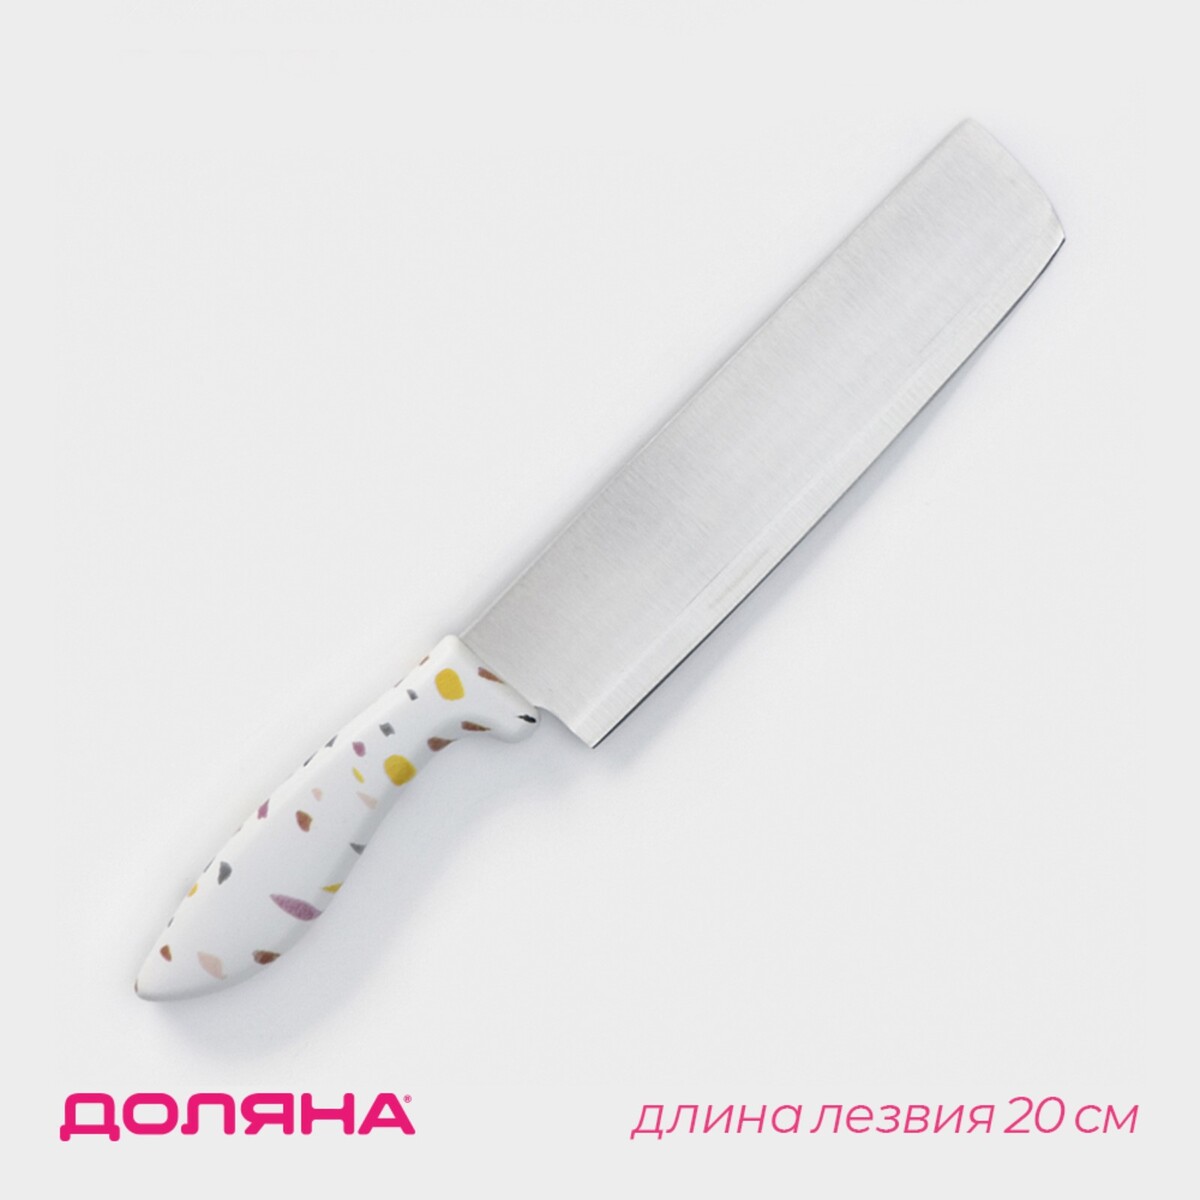 Нож - топорик кухонный доляна sparkle, лезвие 20 см, цвет белый нож топорик большой wild kitchen сталь 95×18 лезвие 19 5 см